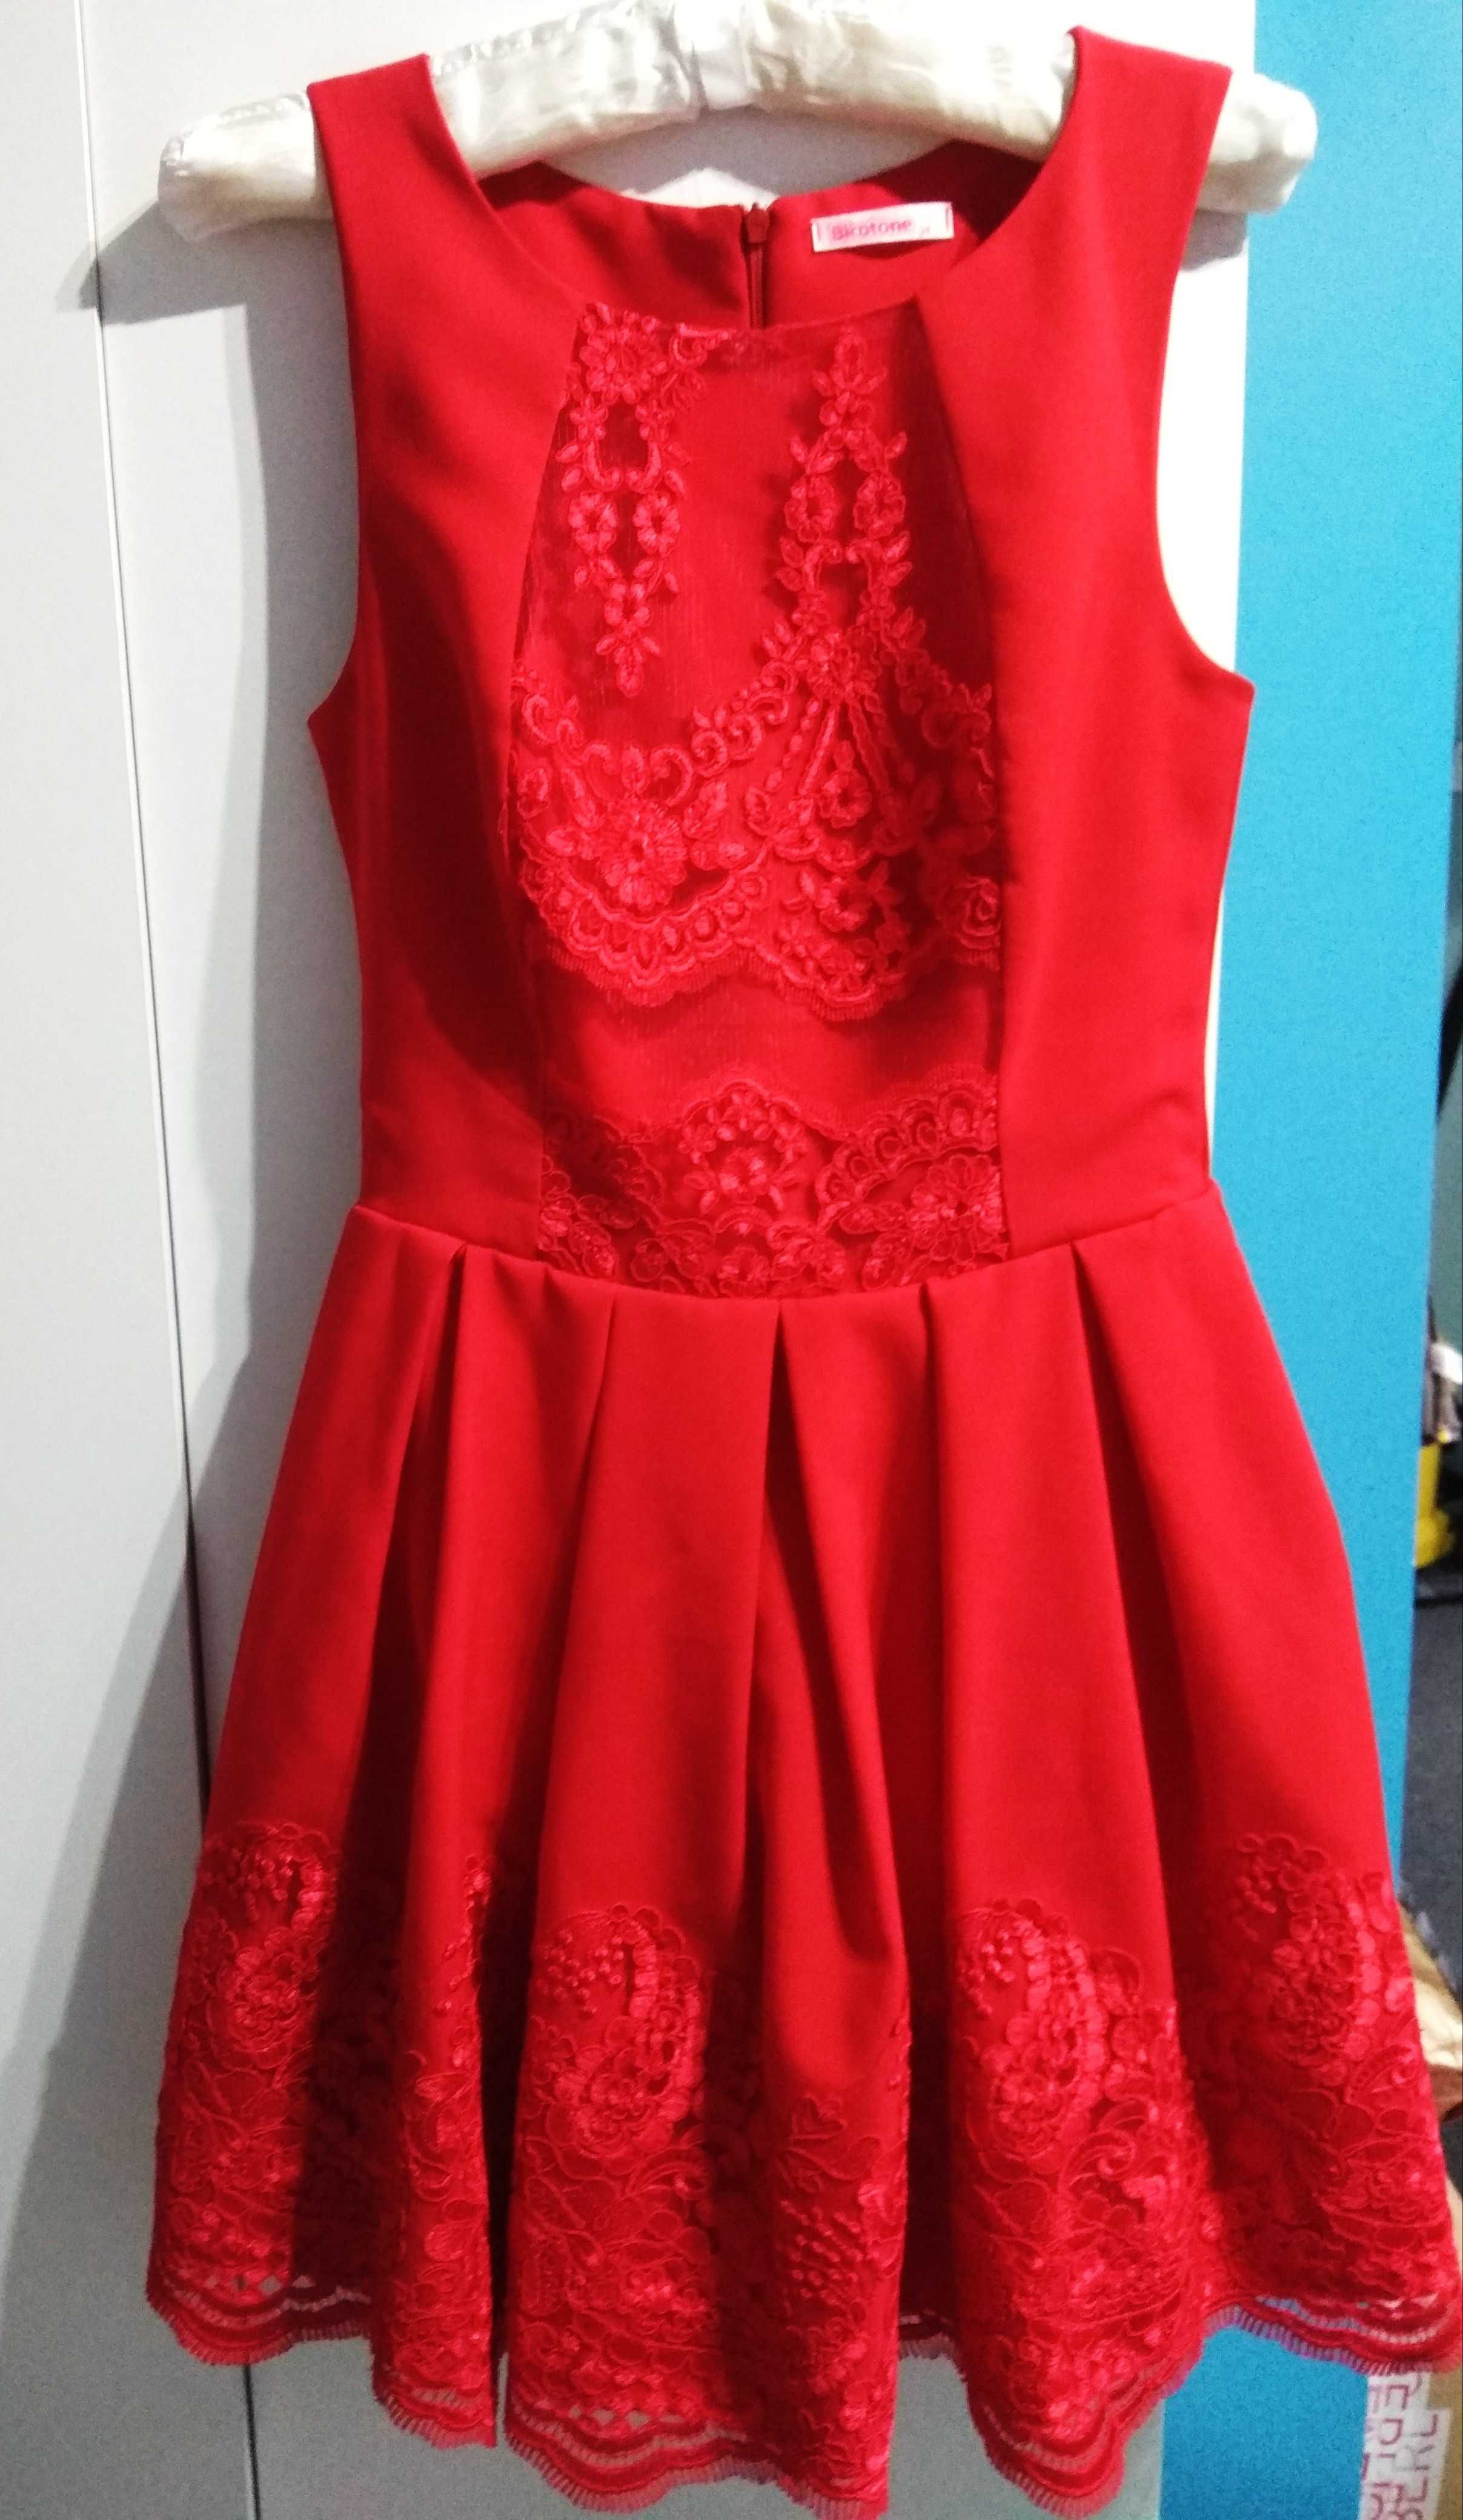 Urocza czerwona sukienka koktajlowa XS 34 koronka czerwień